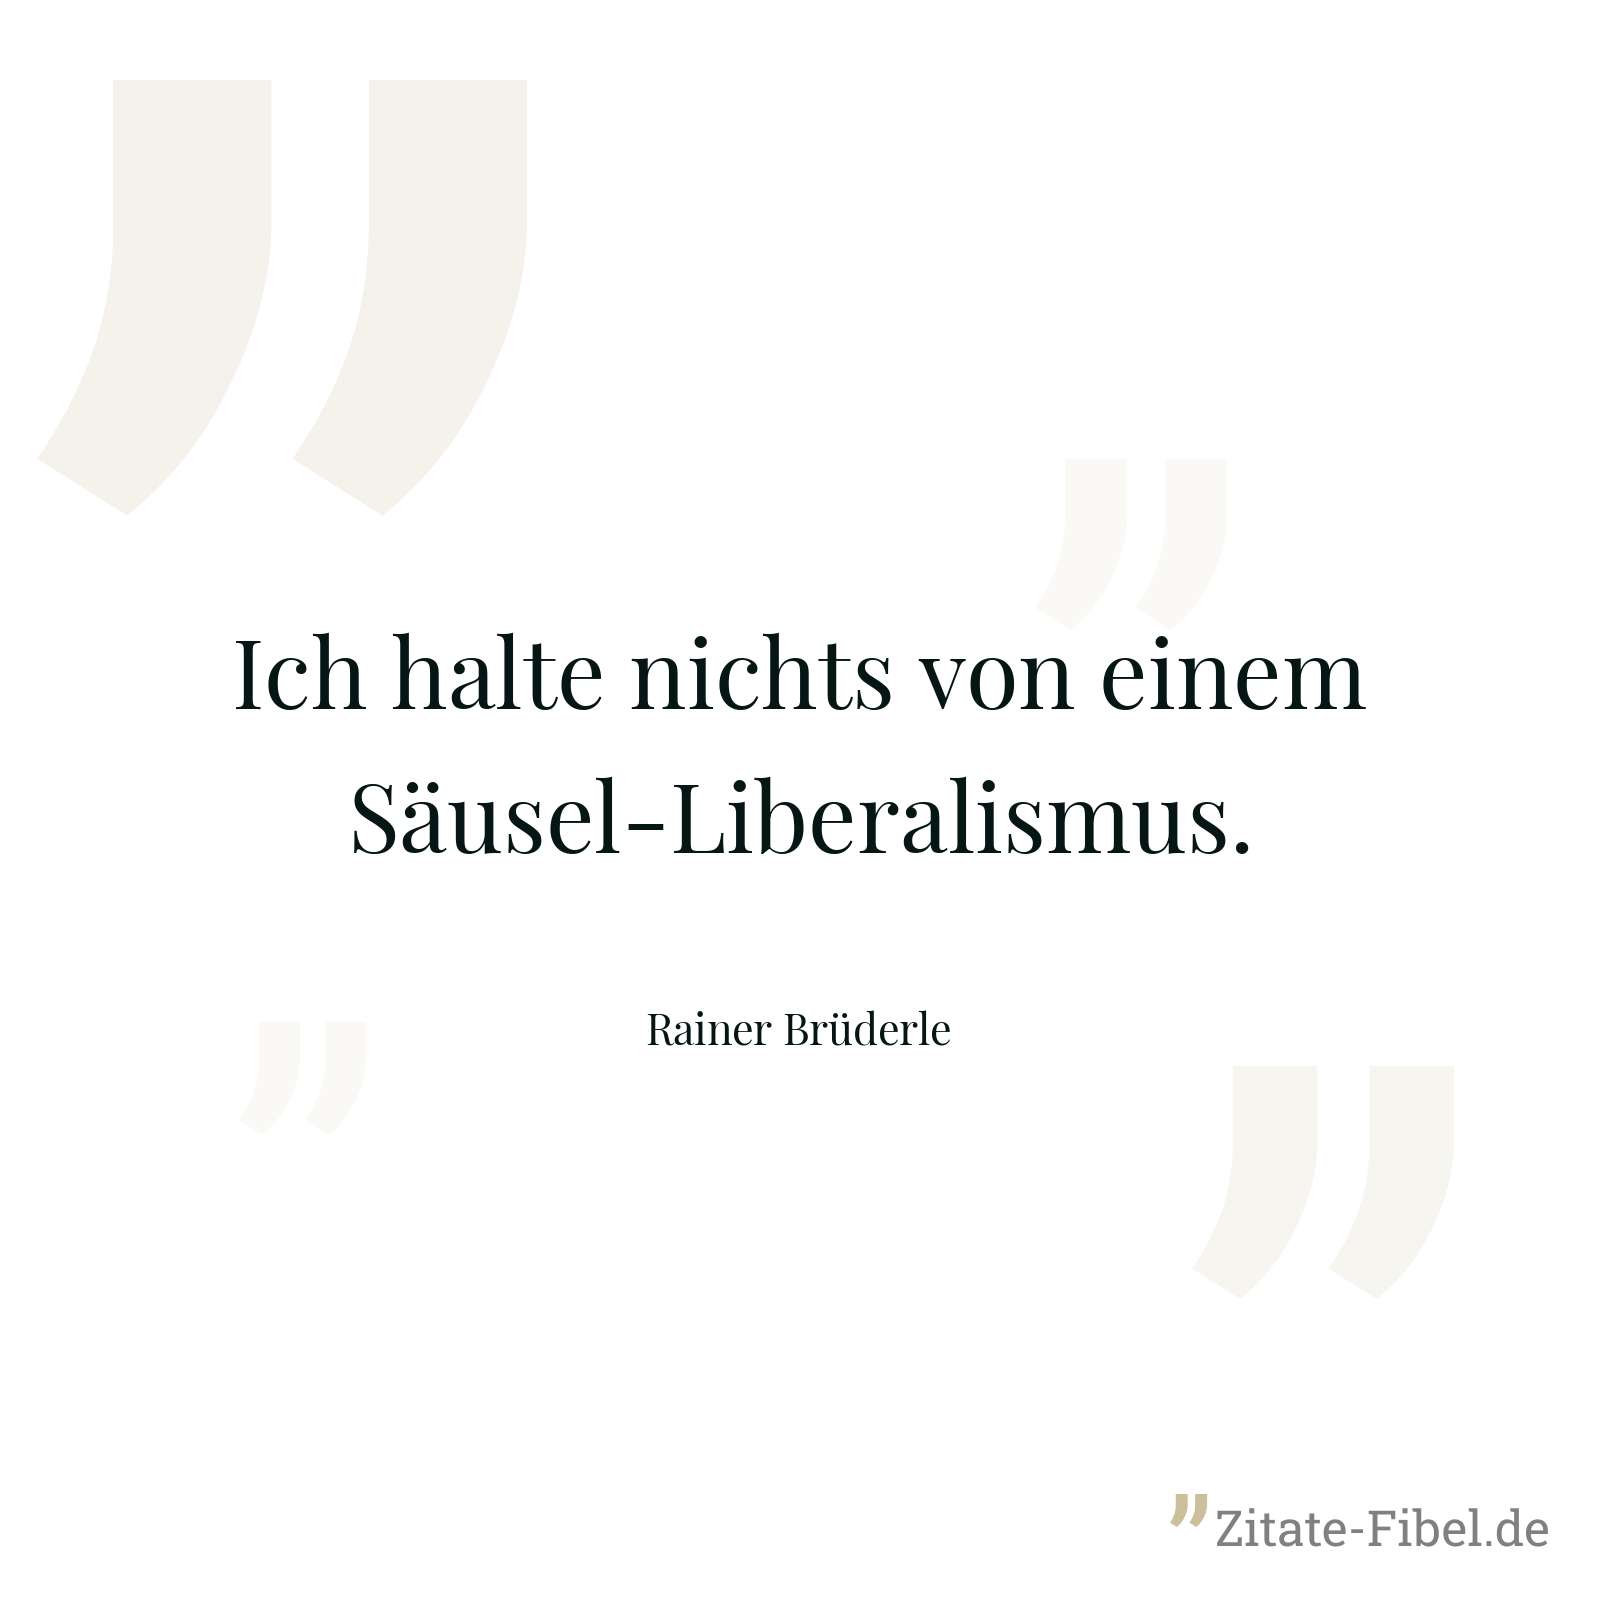 Ich halte nichts von einem Säusel-Liberalismus. - Rainer Brüderle